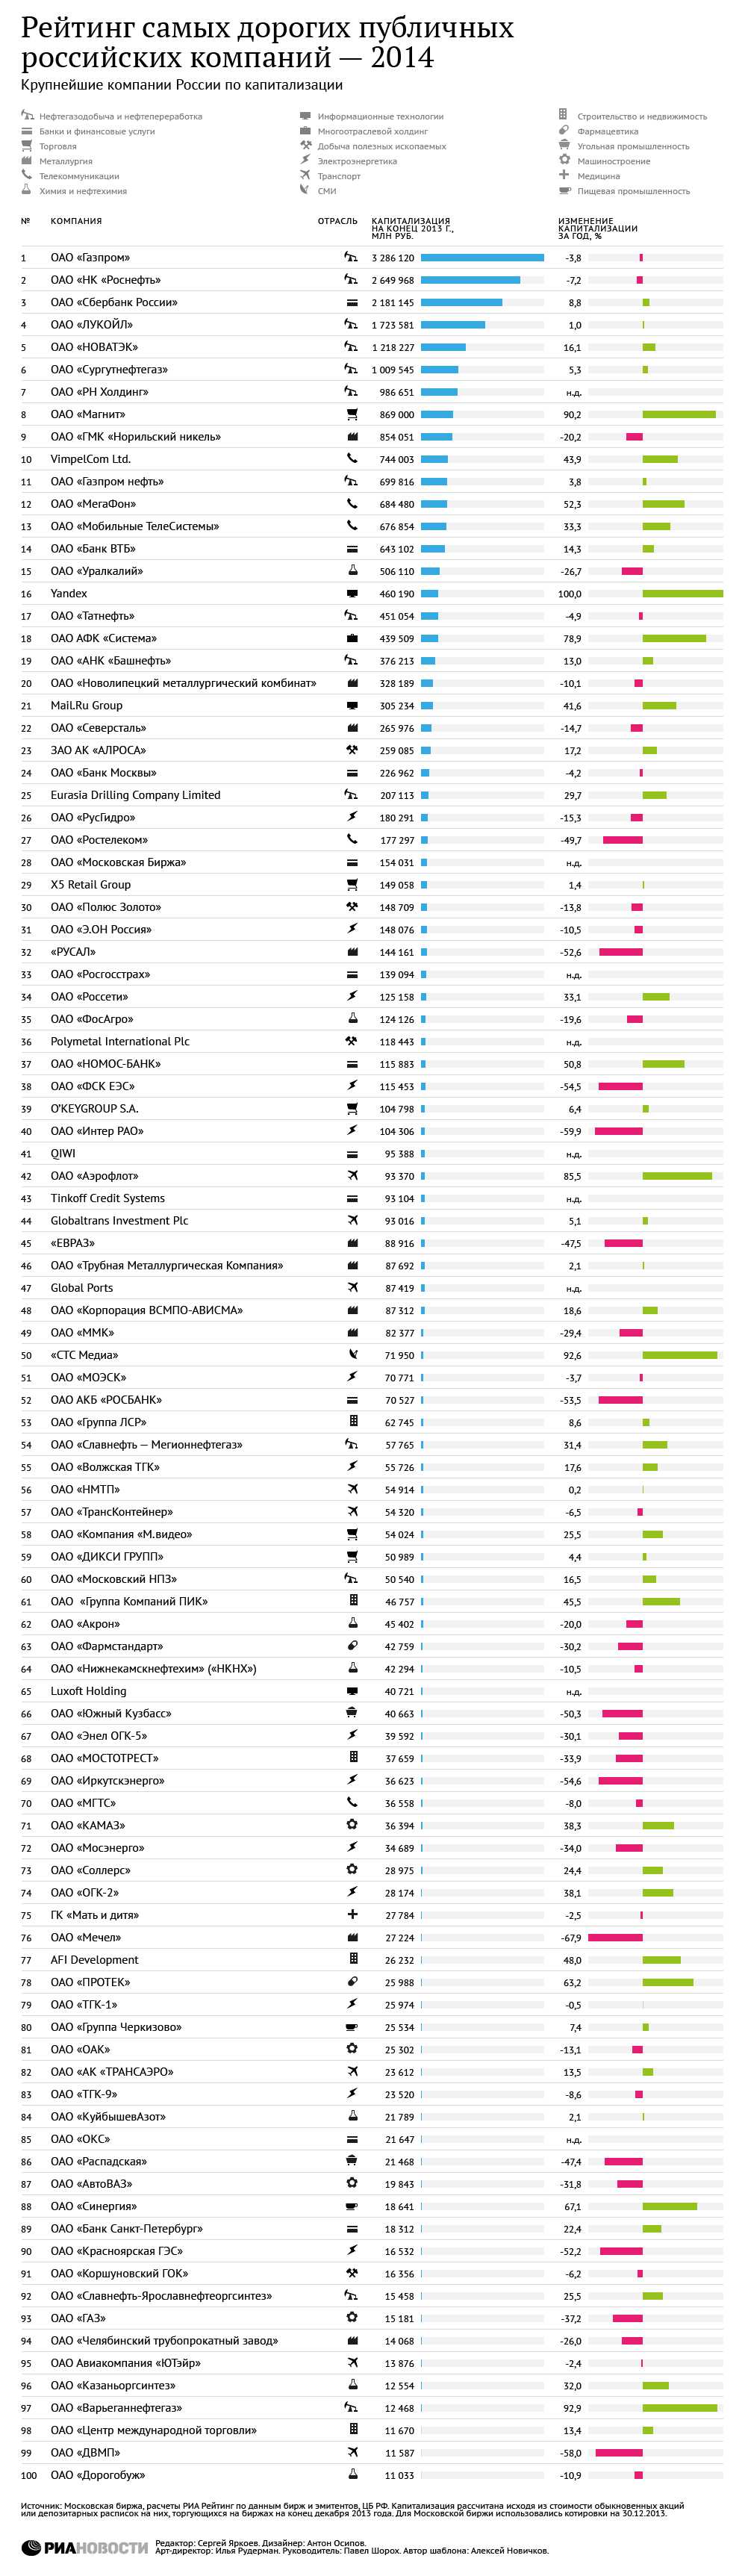 Рейтинг самых дорогих публичных российских компаний-2014